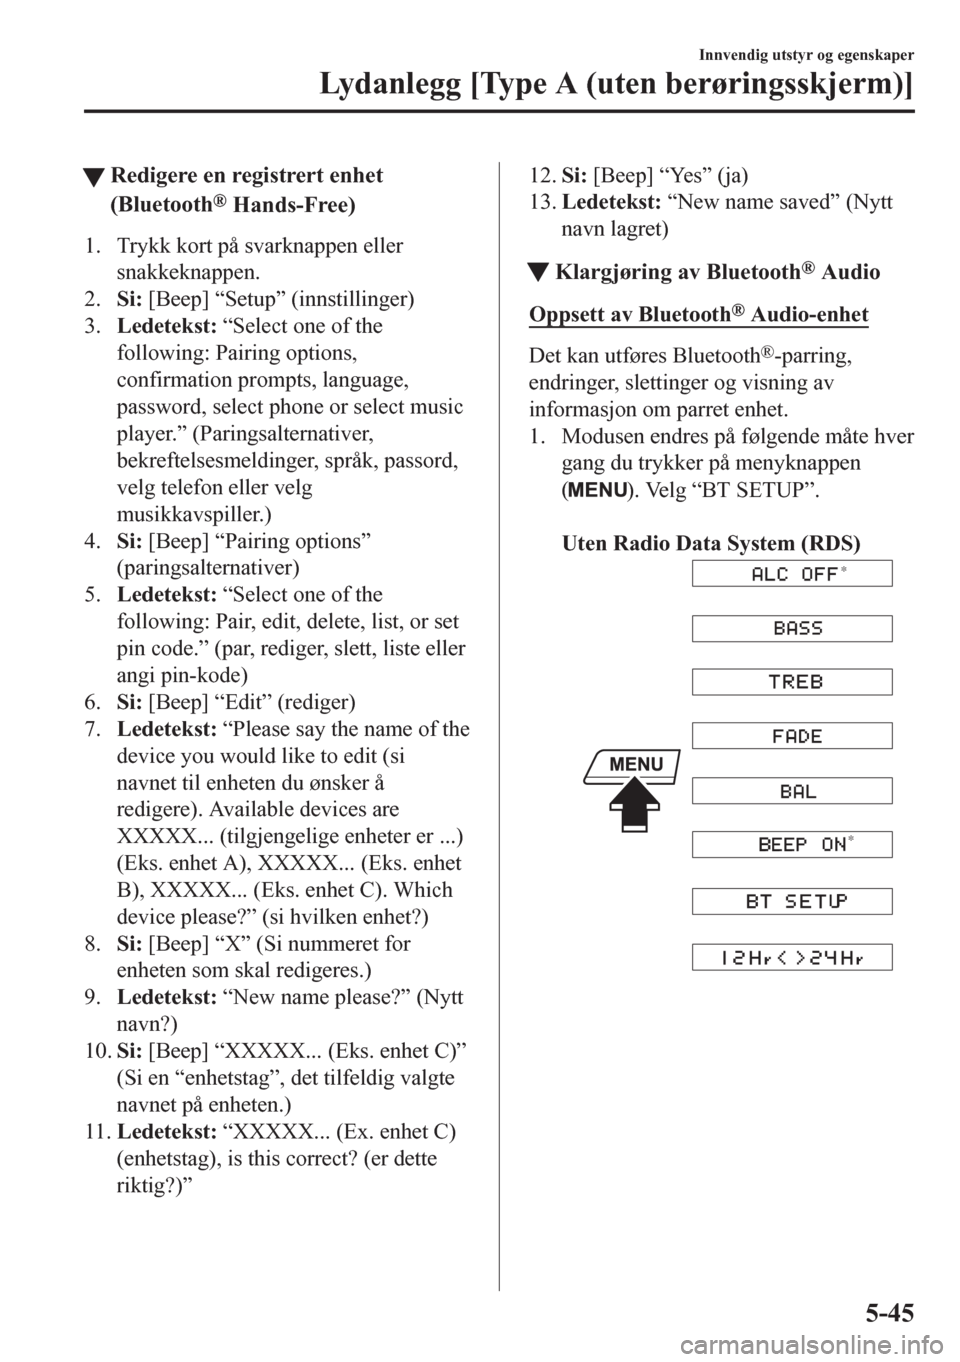 MAZDA MODEL CX-5 2018  Brukerhåndbok (in Norwegian) tRedigere en registrert enhet
(Bluetooth
® Hands-Free)
1. Trykk kort på svarknappen eller
snakkeknappen.
2.Si: [Beep] “Setup” (innstillinger)
3.Ledetekst: “Select one of the
following: Pairing